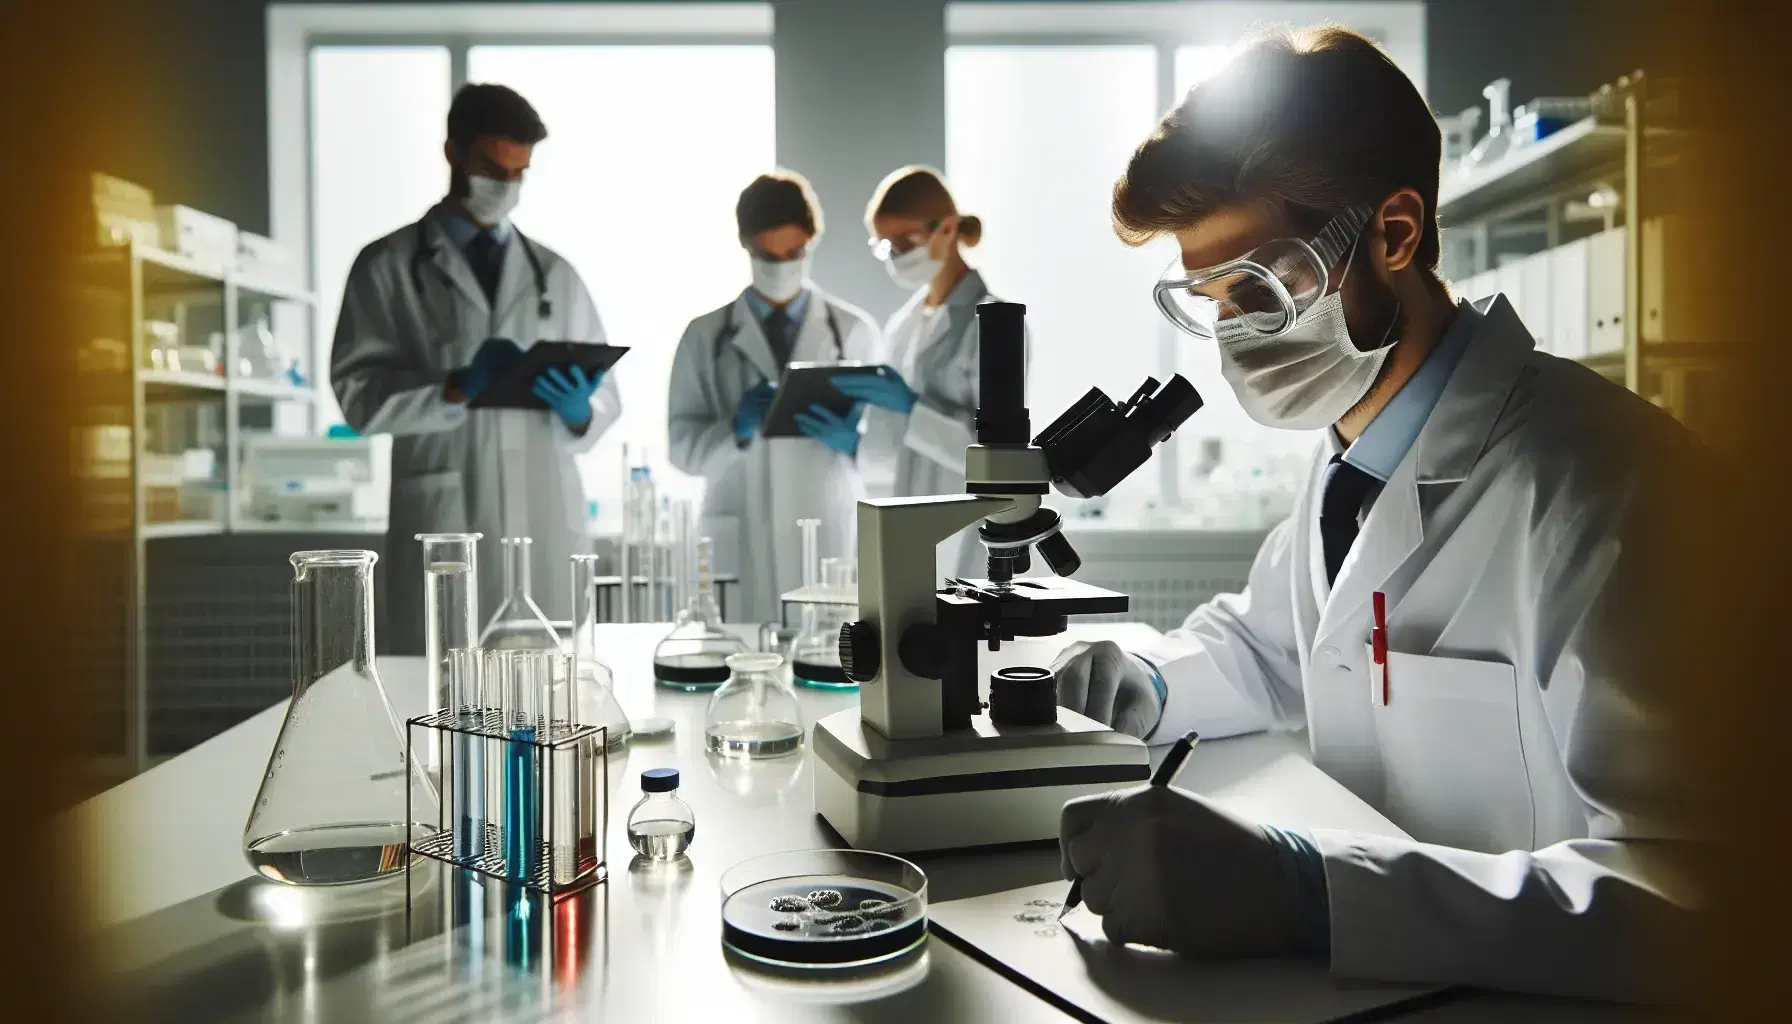 Profesionales de la salud trabajando en laboratorio, uno observando a través de un microscopio y otro registrando datos en una tableta, con estantes de frascos de colores y placas de Petri en la mesa.